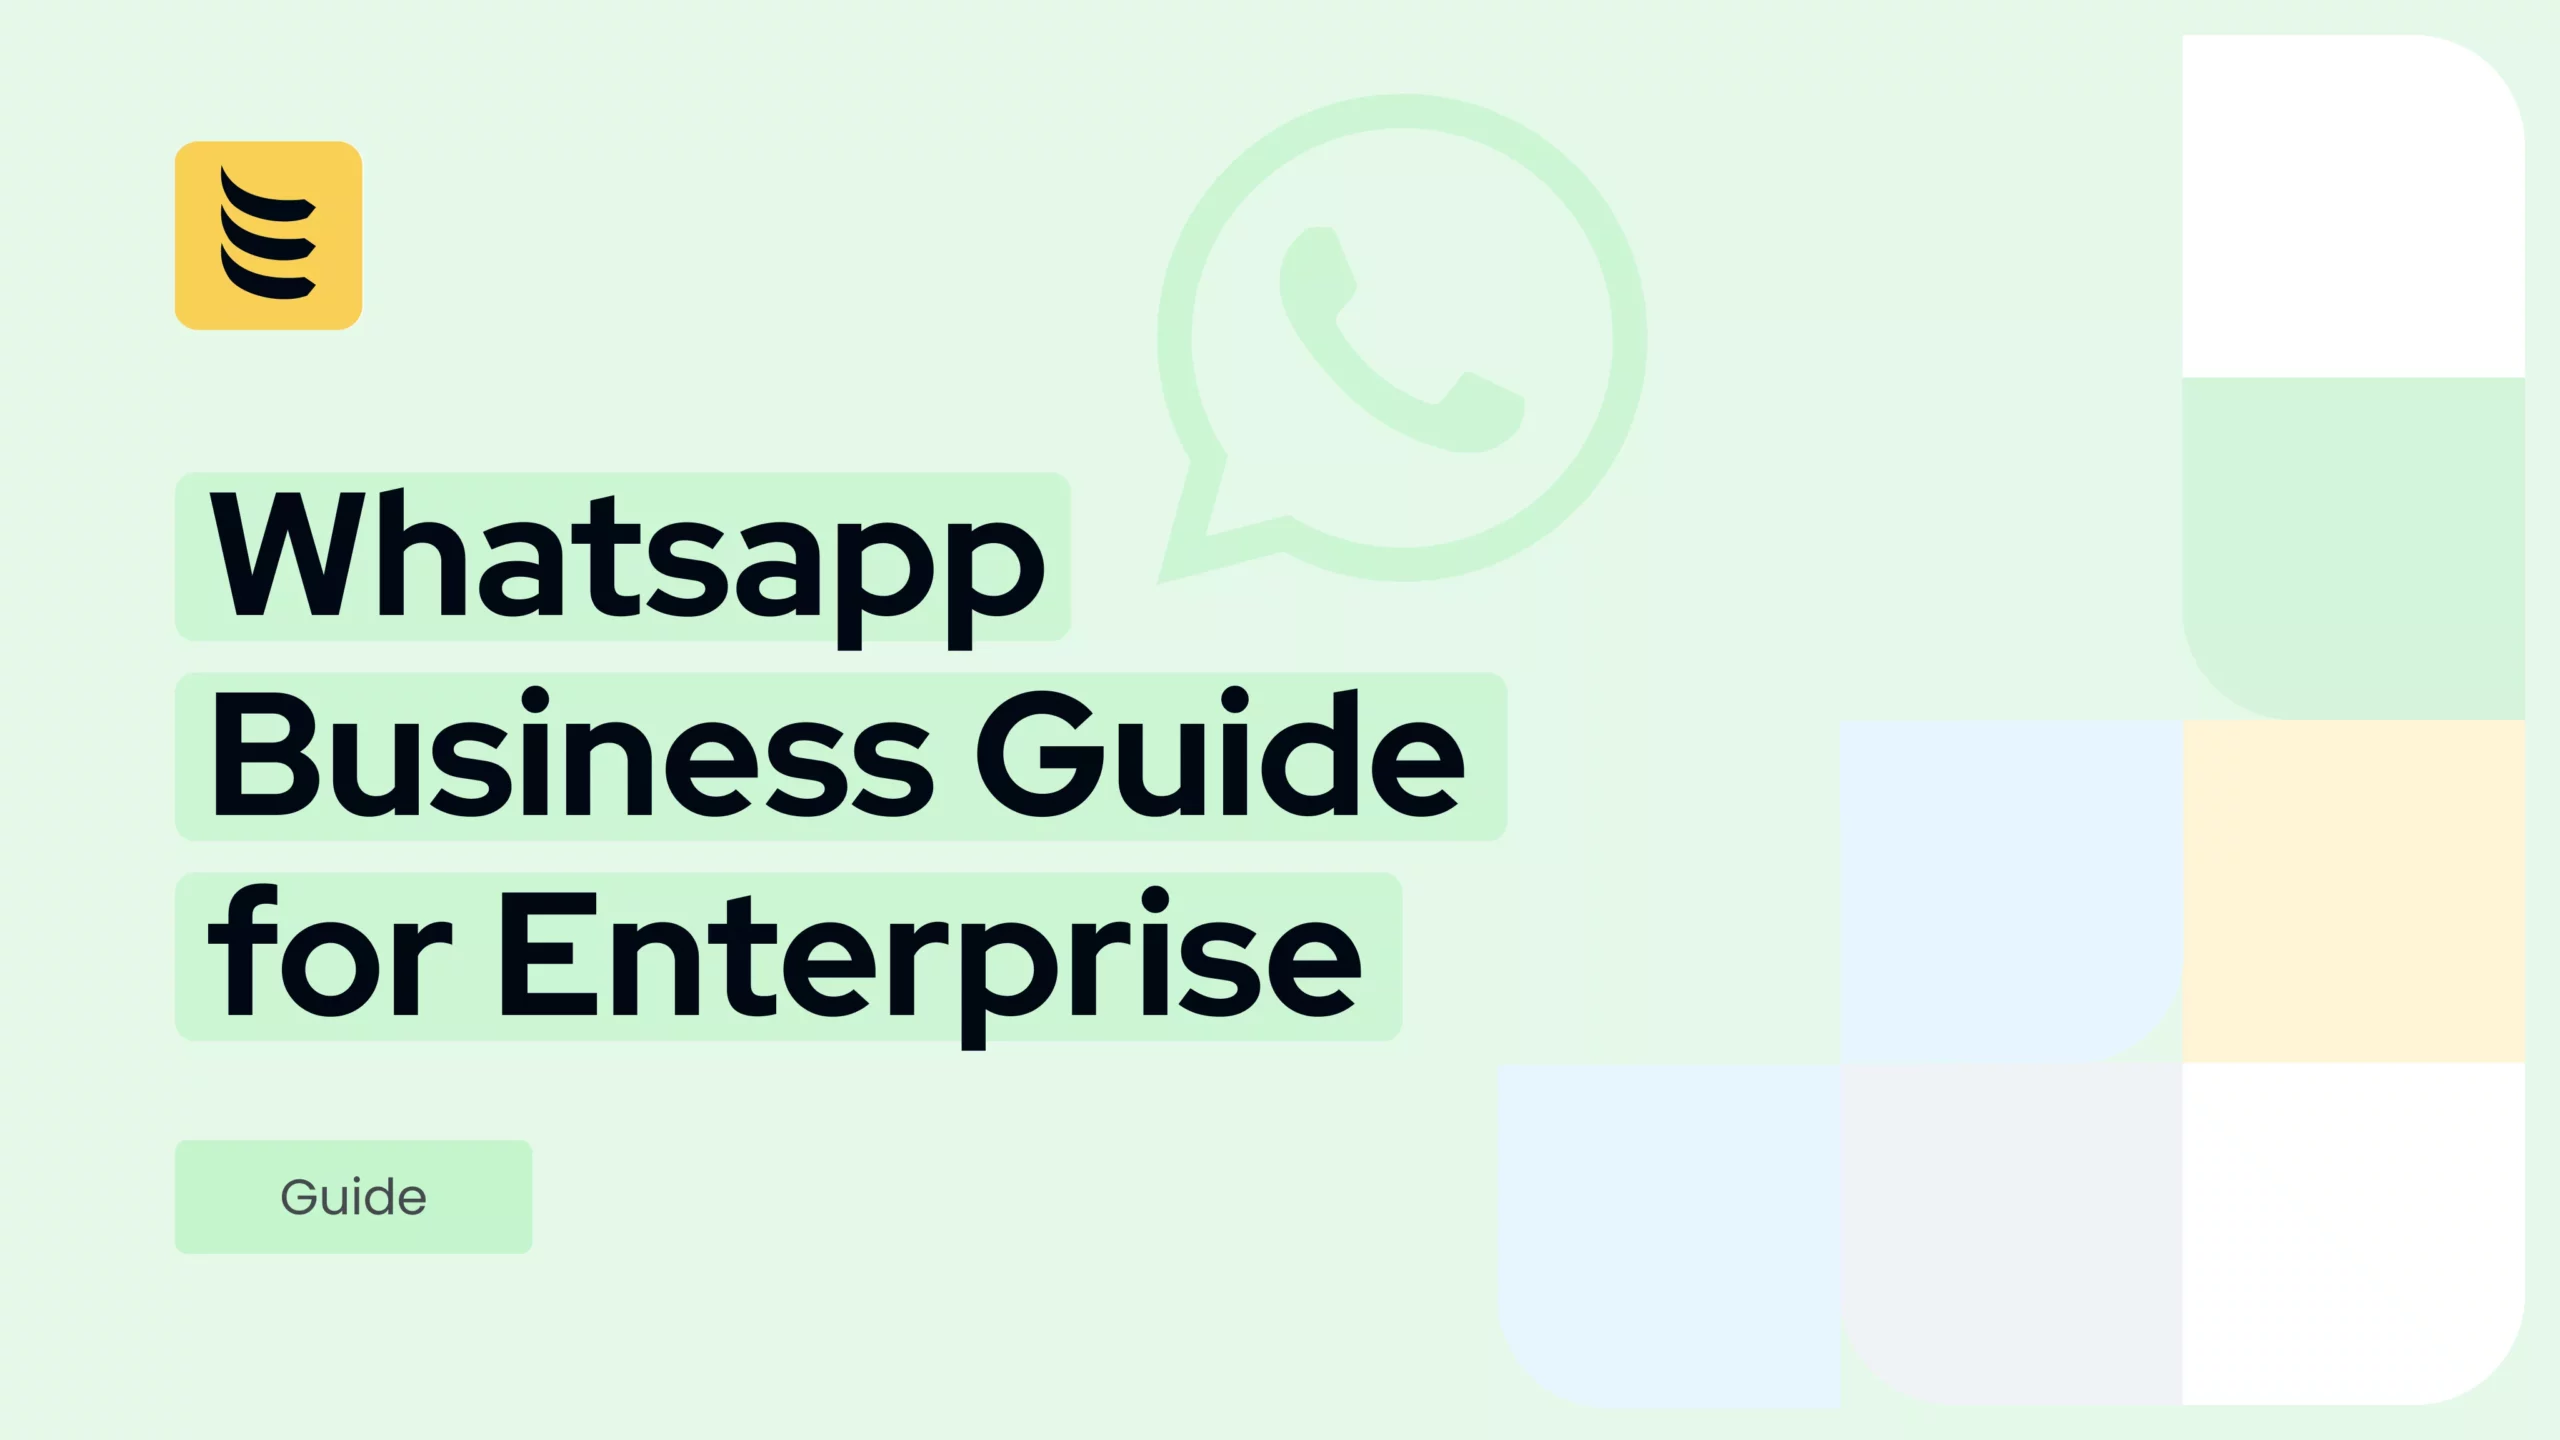 Guia de negócios do Whatsapp em 9 etapas para empresas